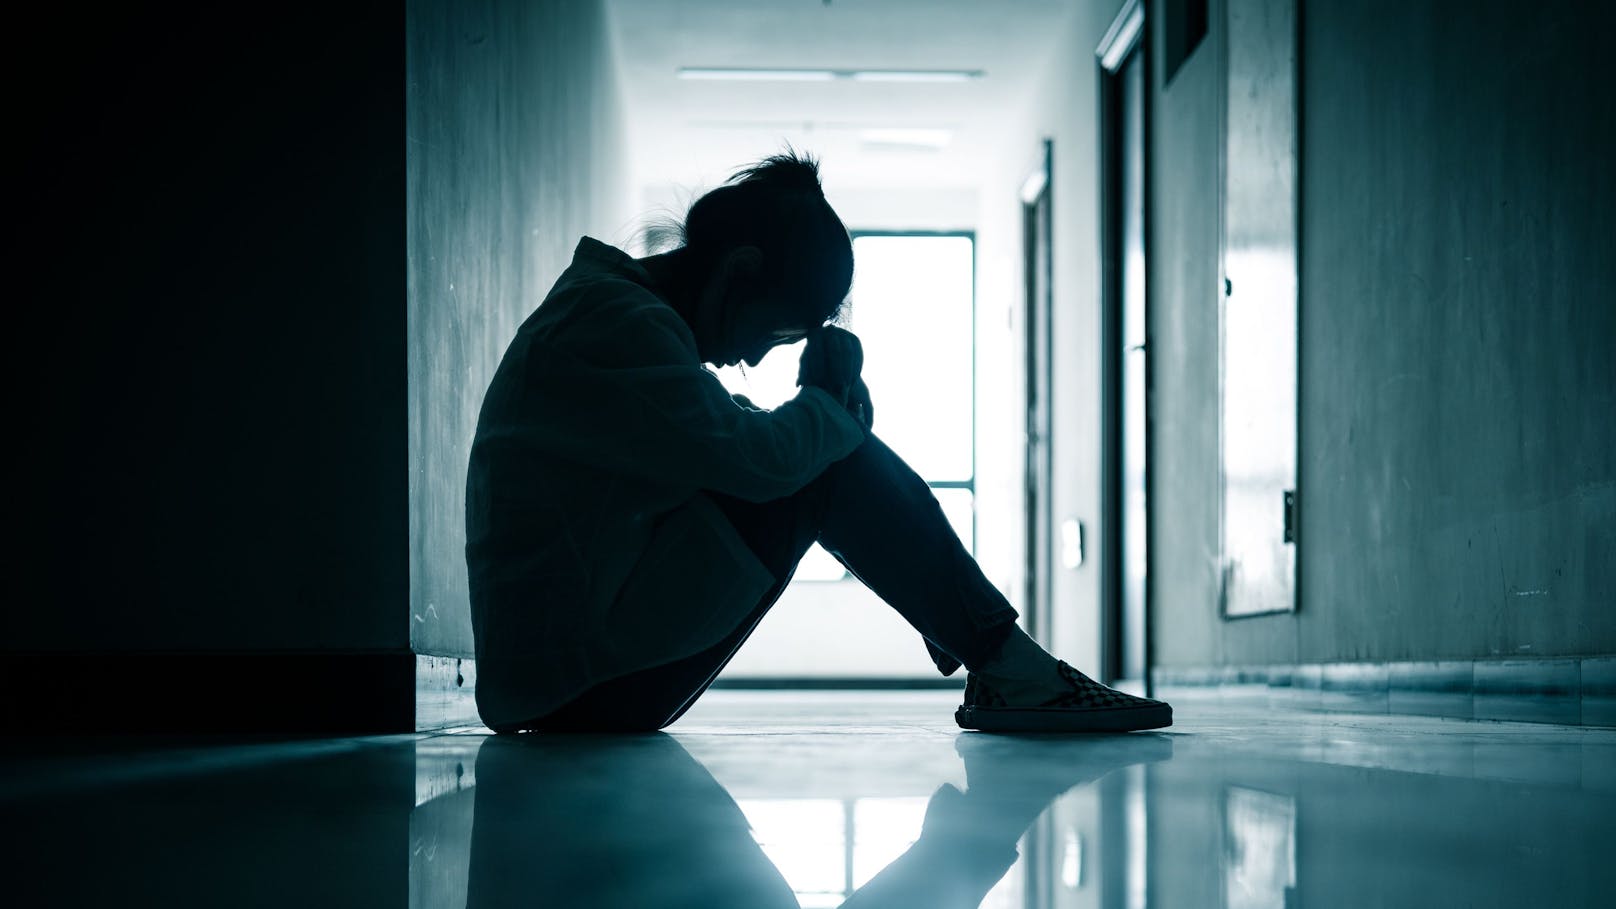 Depressionen und Essstörungen sind seit Pandemiebeginn bei Jugendlichen deutlich gestiegen.